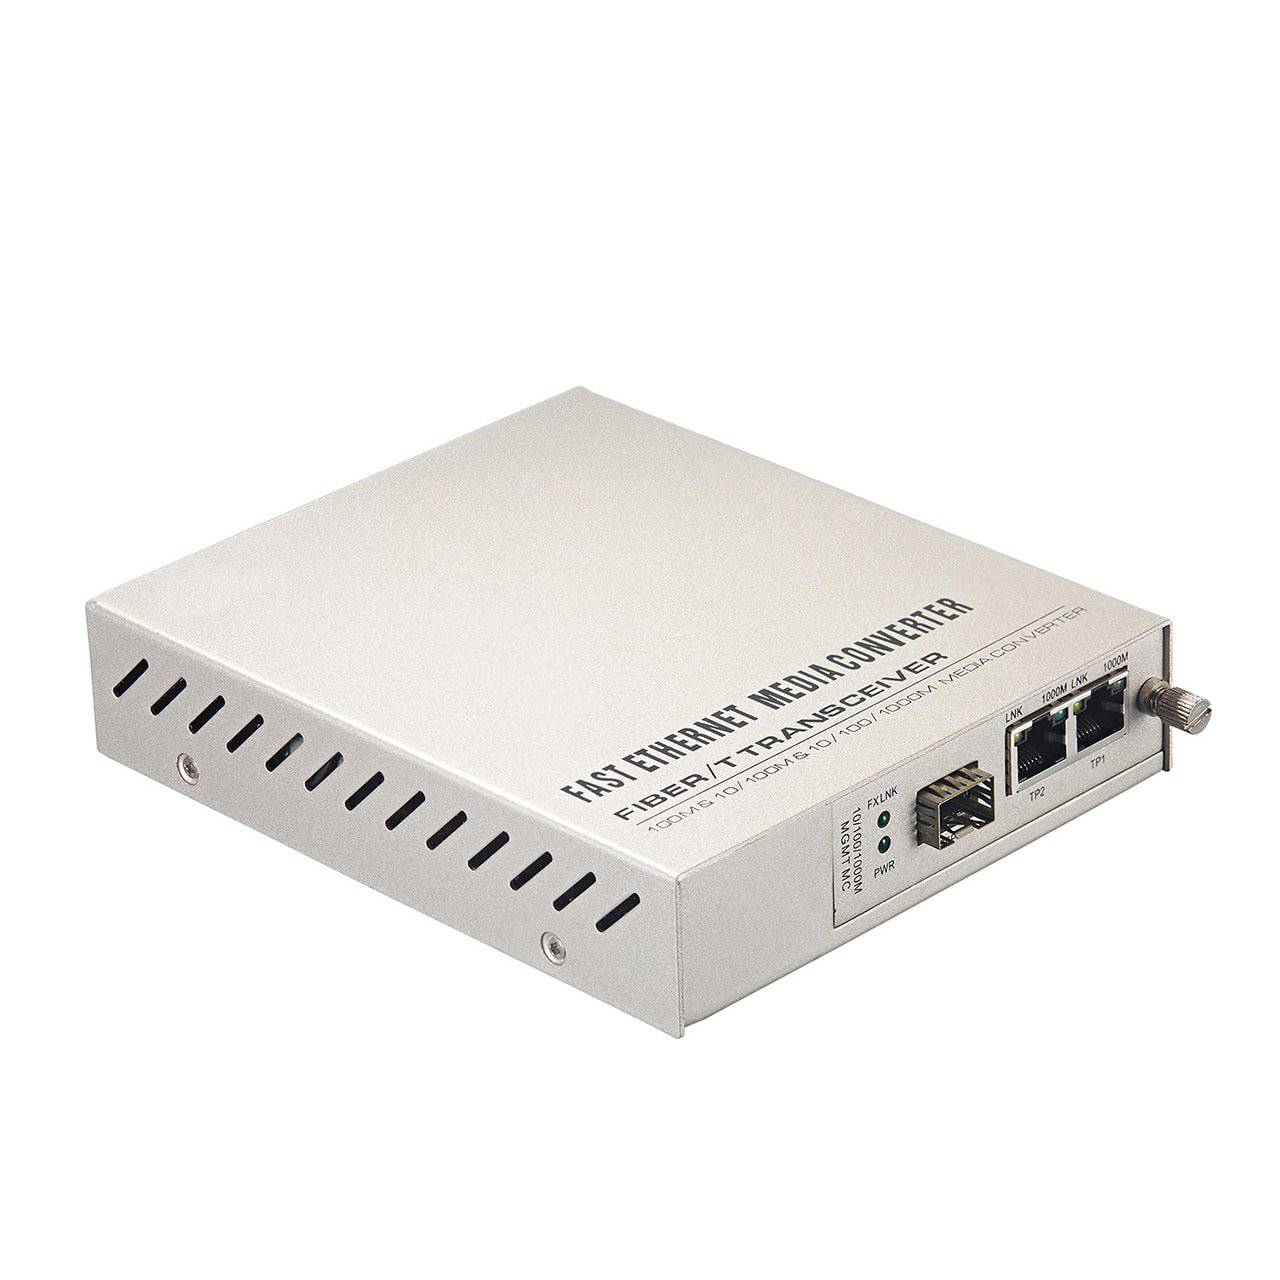 2-Port 10/100/1000Base-TX til 1000Base-FX Managed GbE Media Converter Card